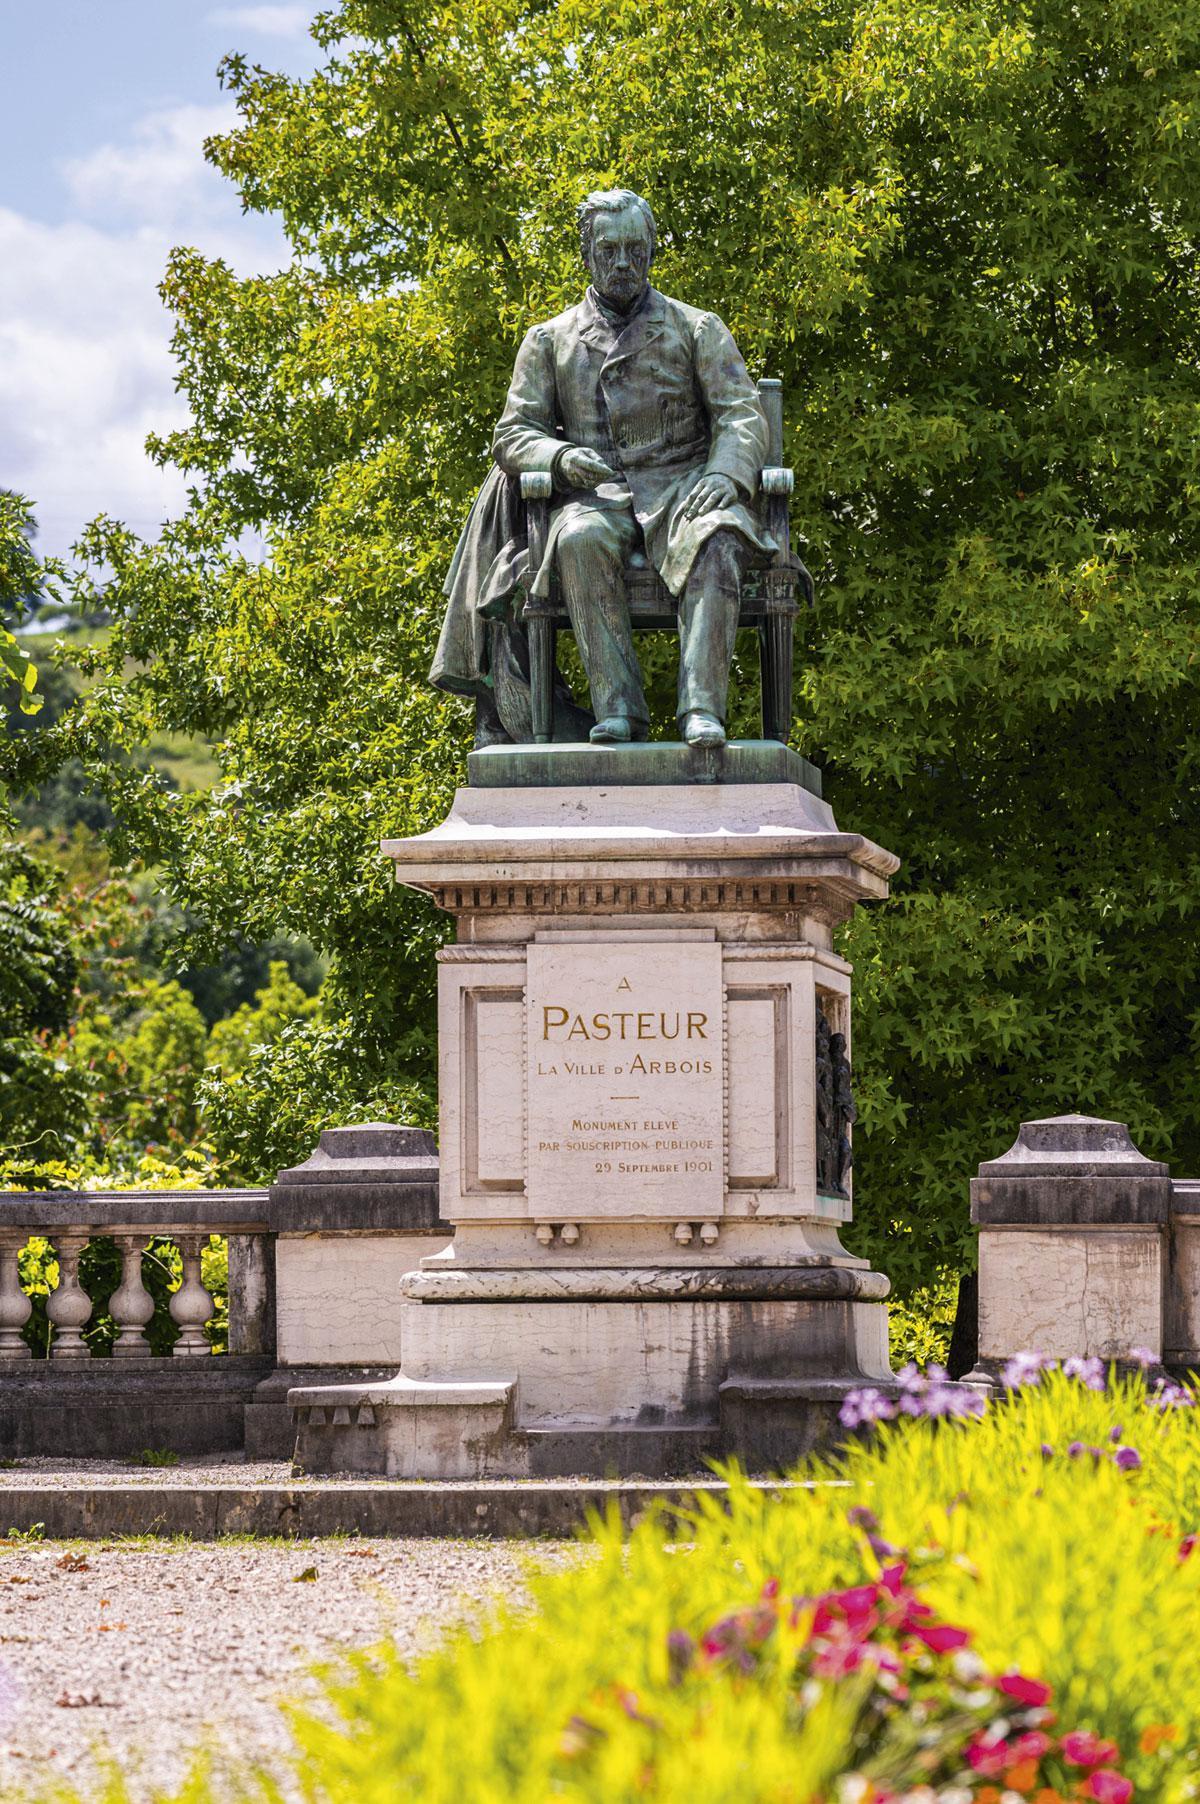 Het standbeeld van Pasteur in Arbois.